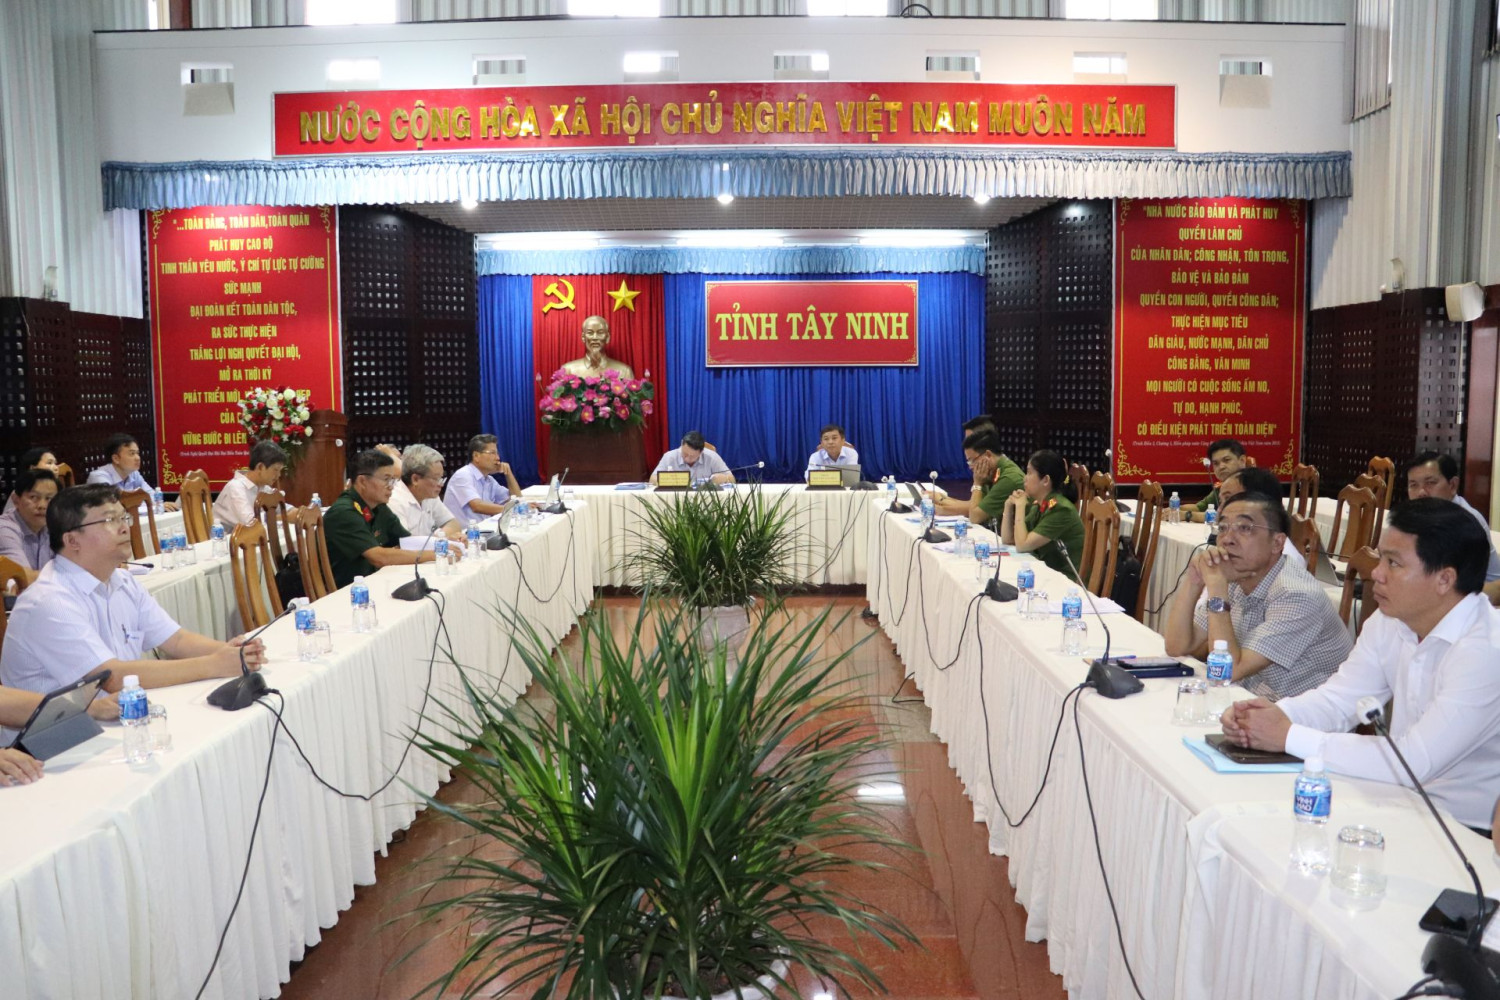 Đại biểu dự hội nghị tại điểm cầu tỉnh Tây Ninh.